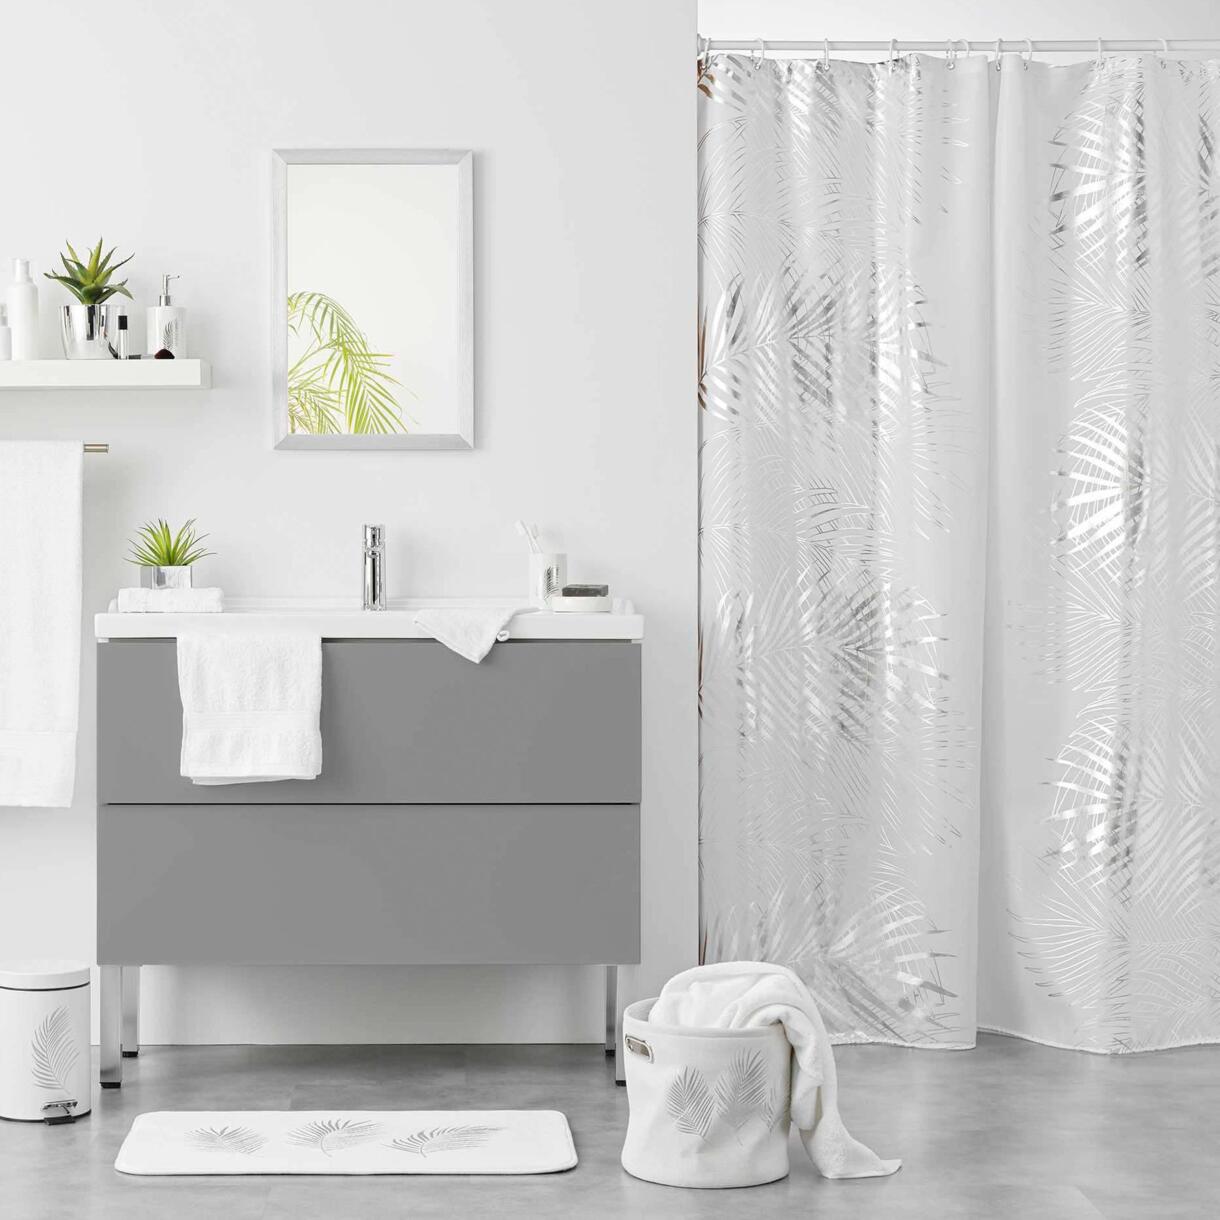 Duschvorhang (200 cm) Orbella Weiß und Silber 1